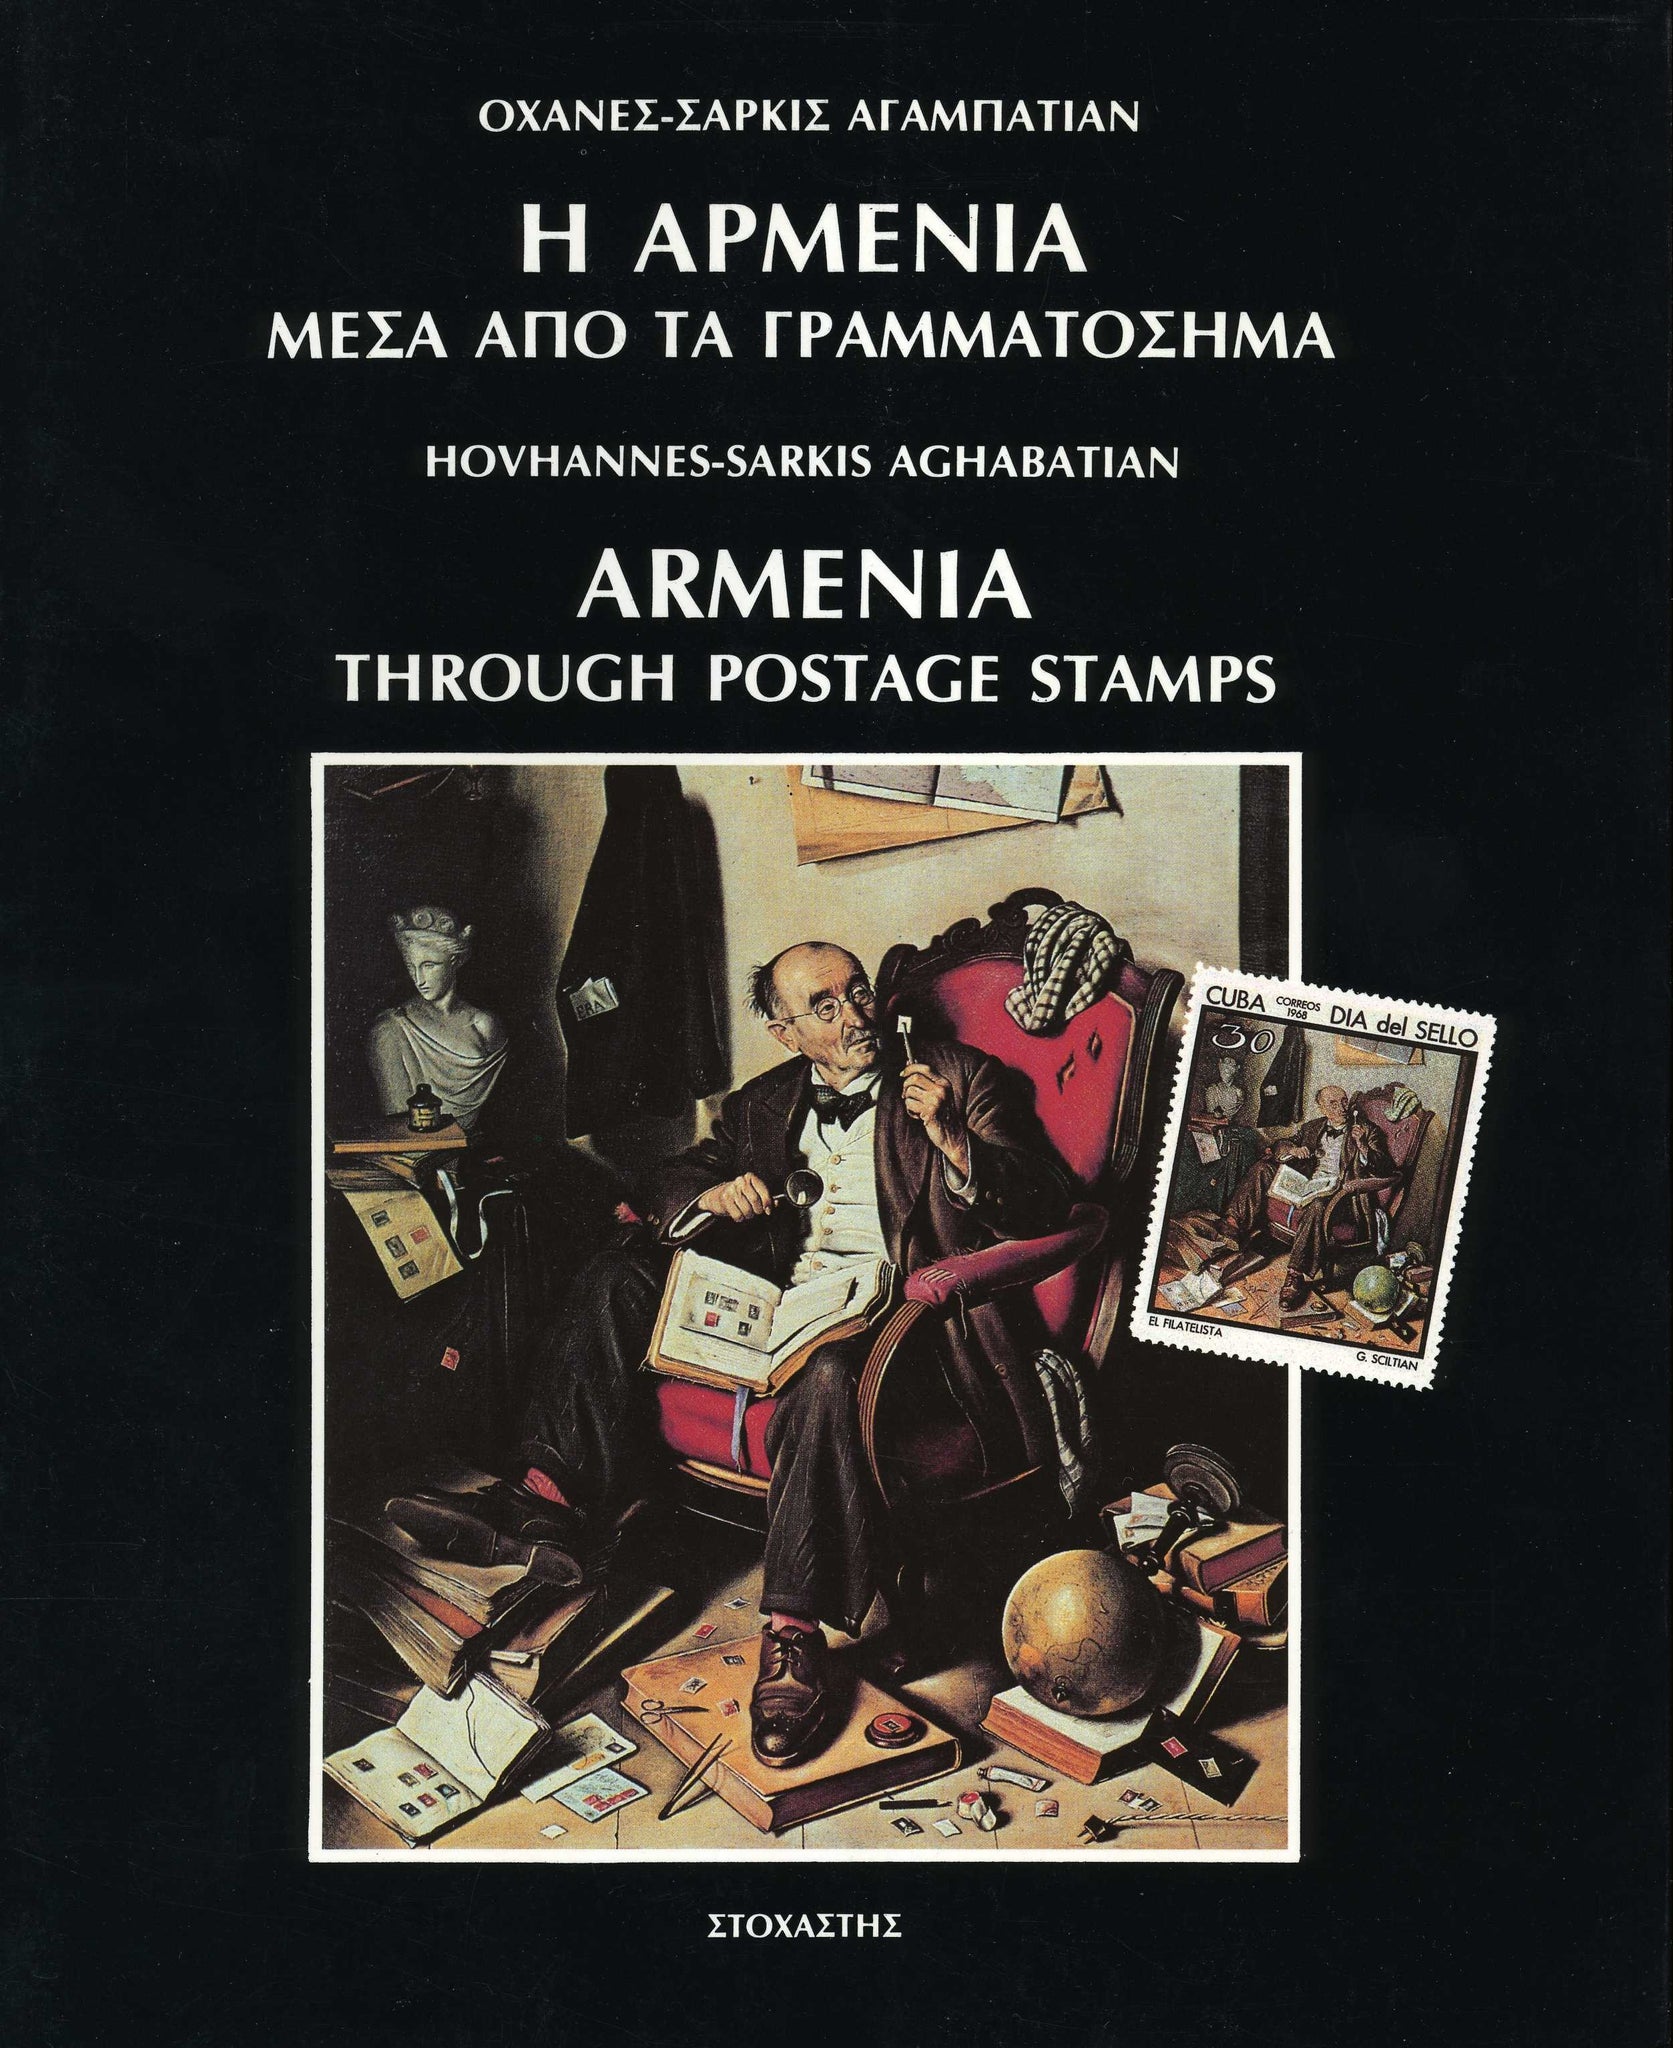 ARMENIA THROUGH POSTAGE STAMPS